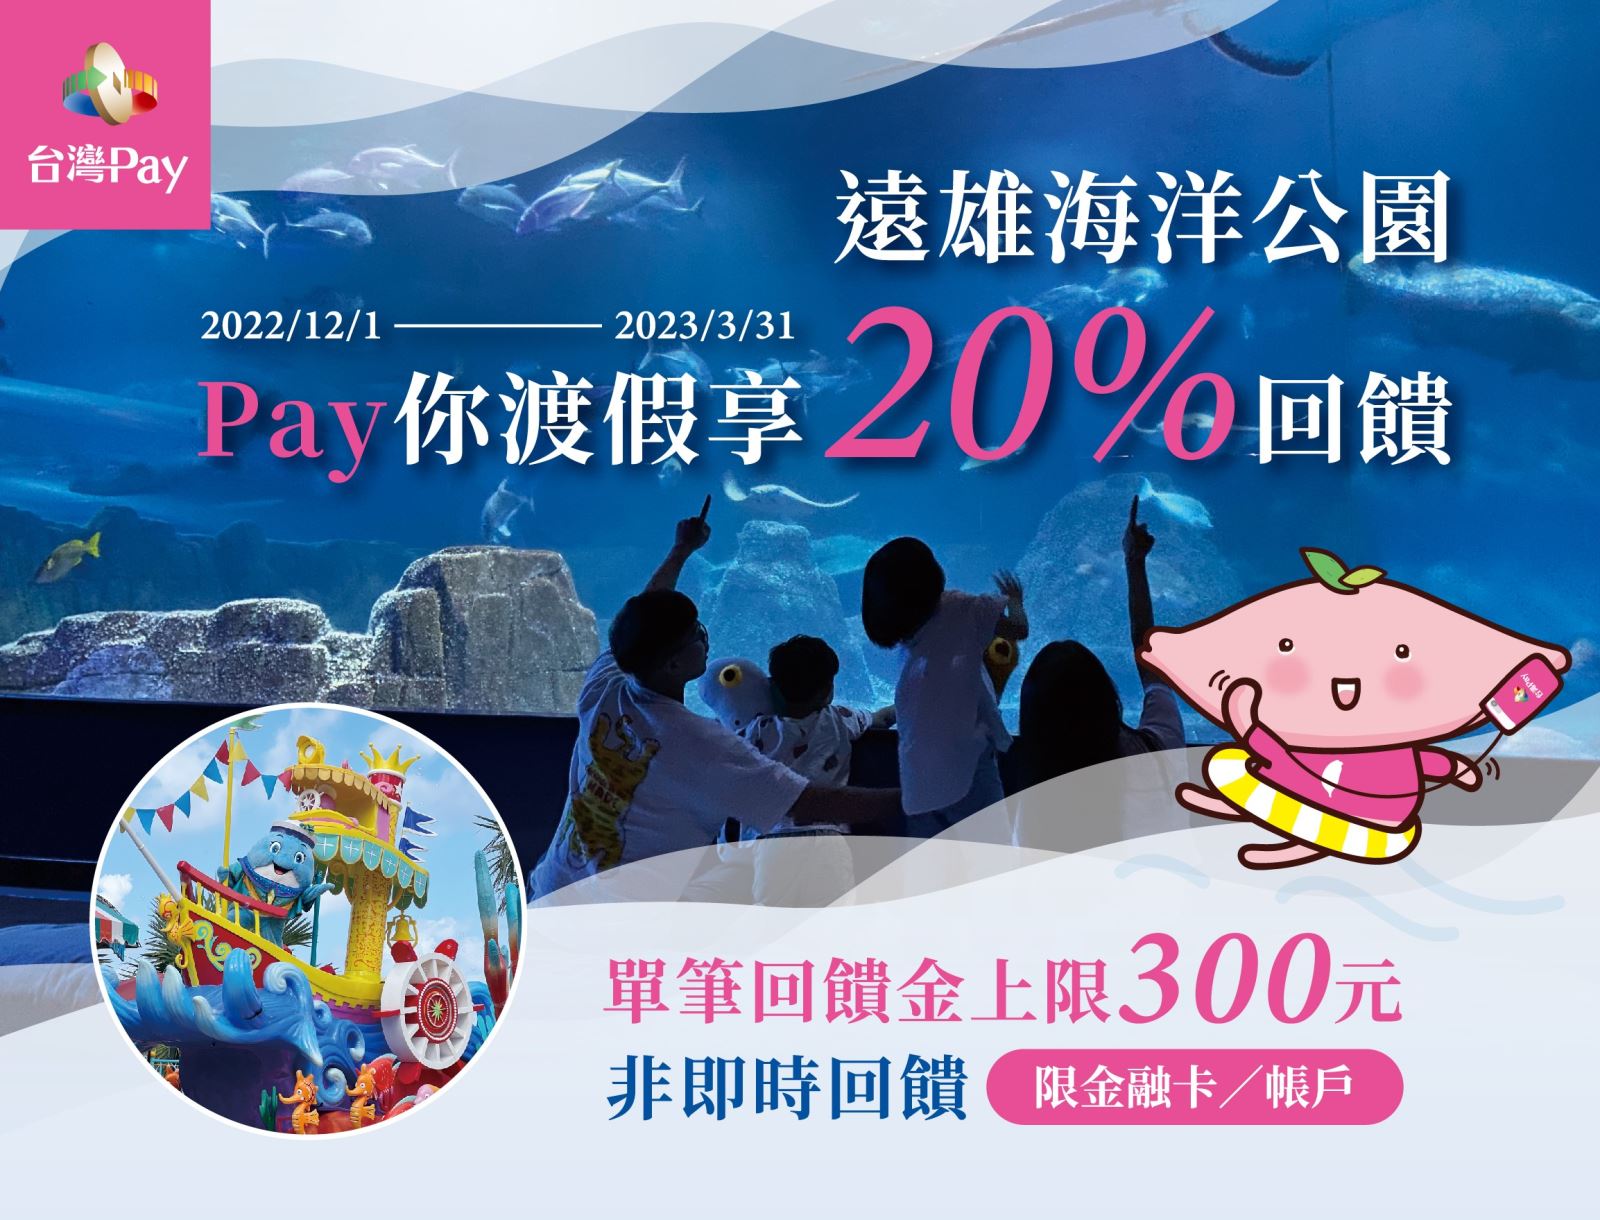 活動期間至活動地點出示「台灣Pay」付款條碼進行消費，可享單筆交易不限金額20%現金回饋，單筆交易回饋金上限新臺幣300元。